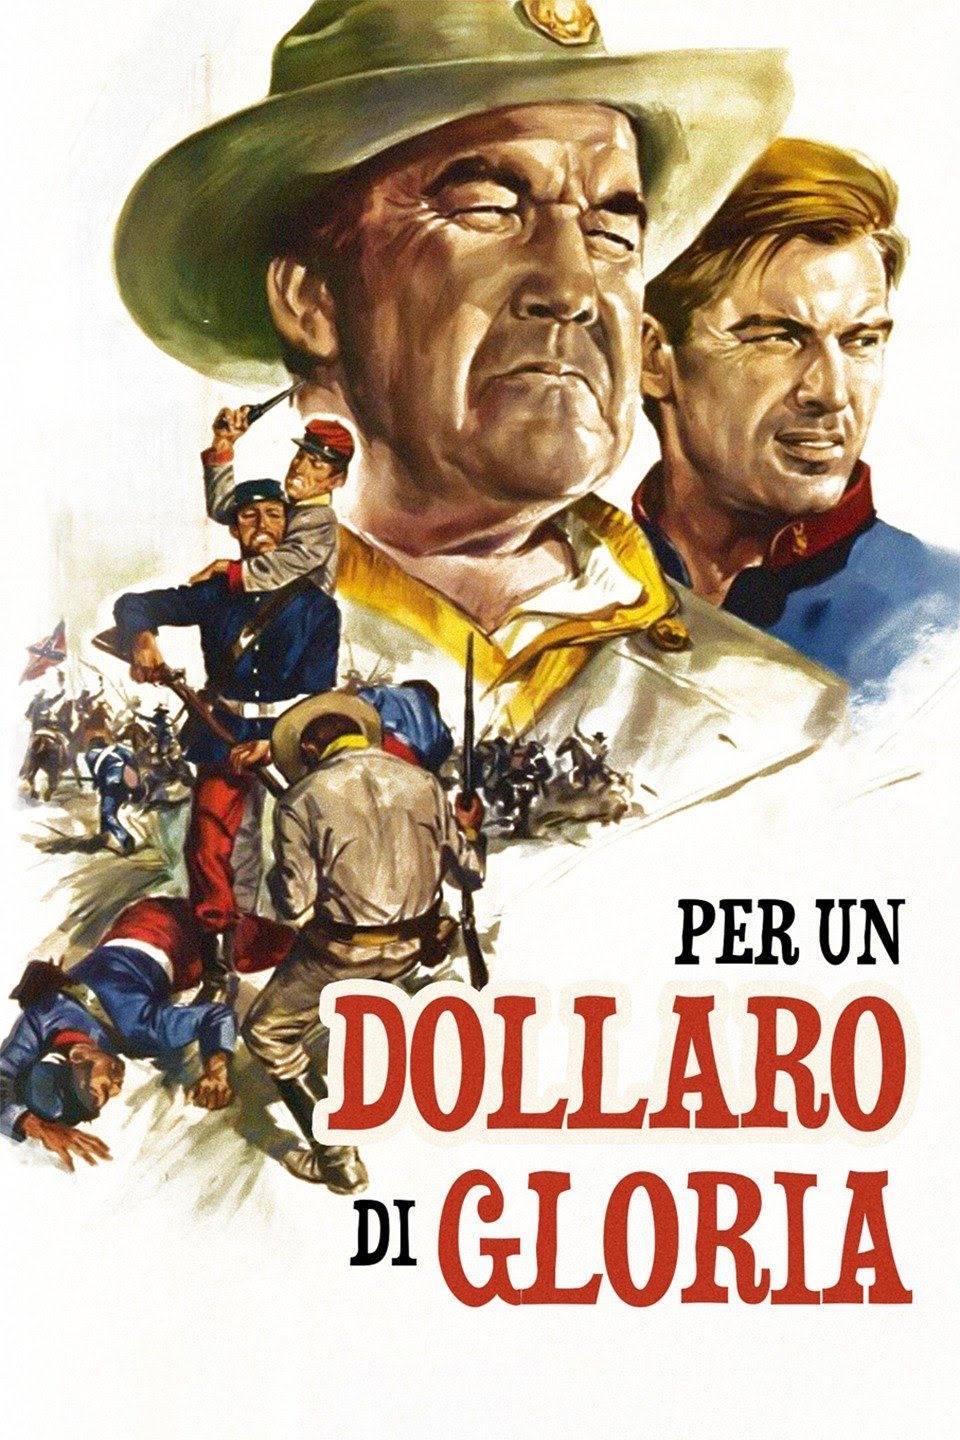 Per un dollaro di gloria (1966)